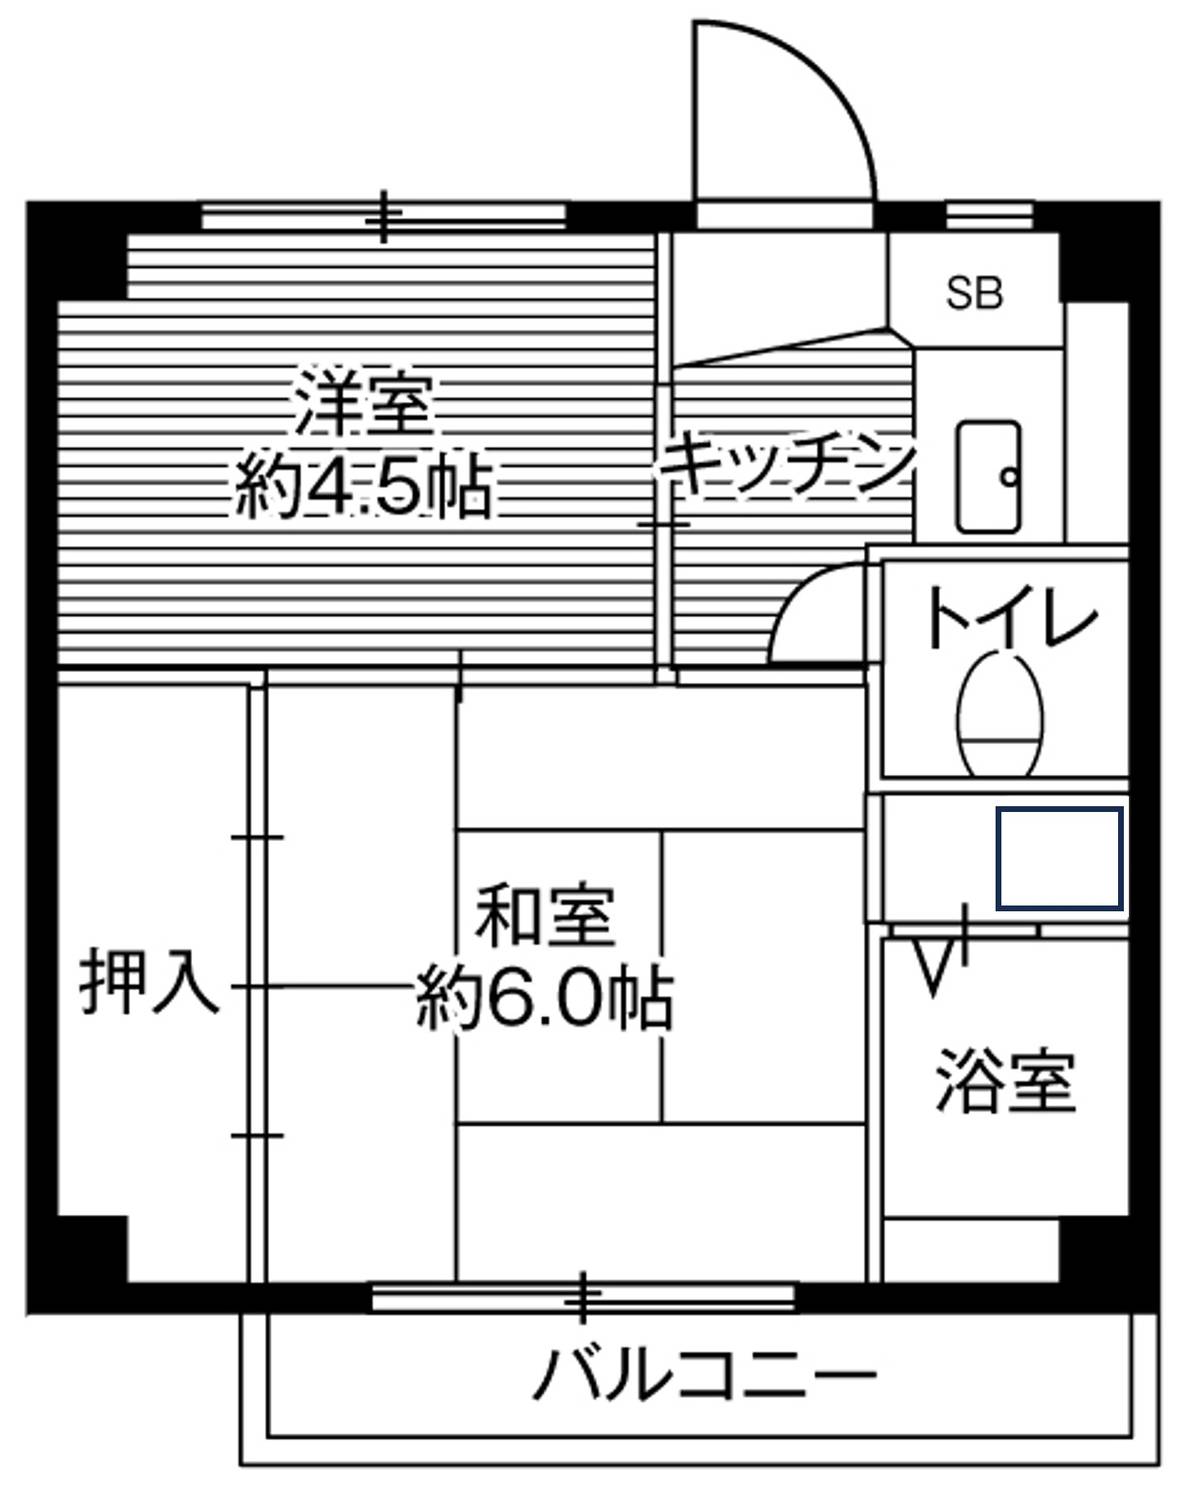 Sơ đồ phòng 2K của Village House Ichihara ở Ichihara-shi